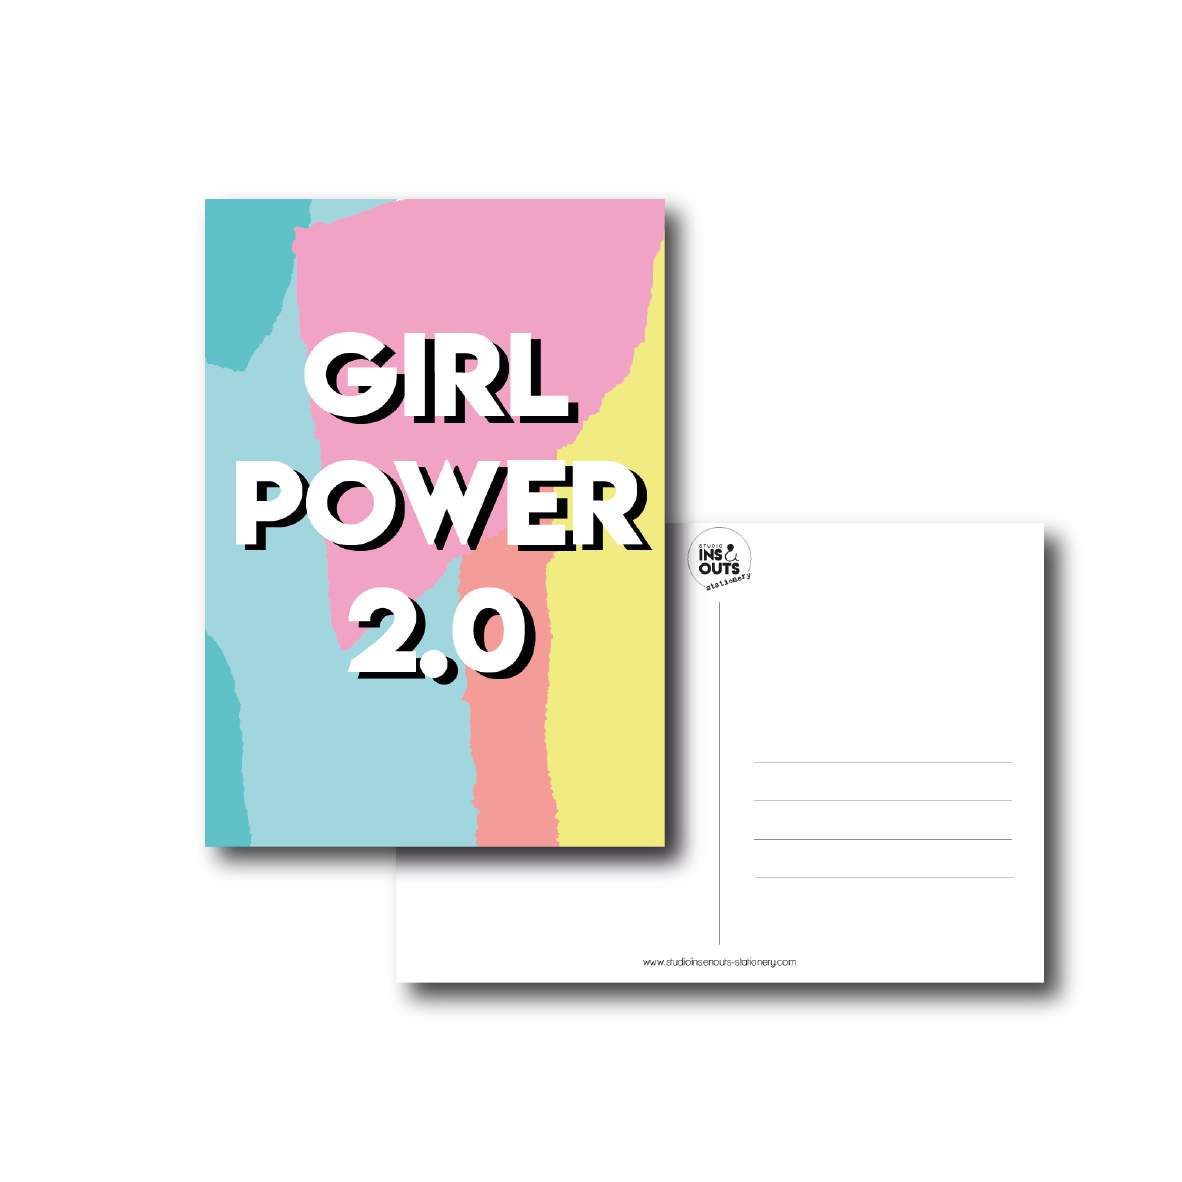 girl-power-20_tekengebied1